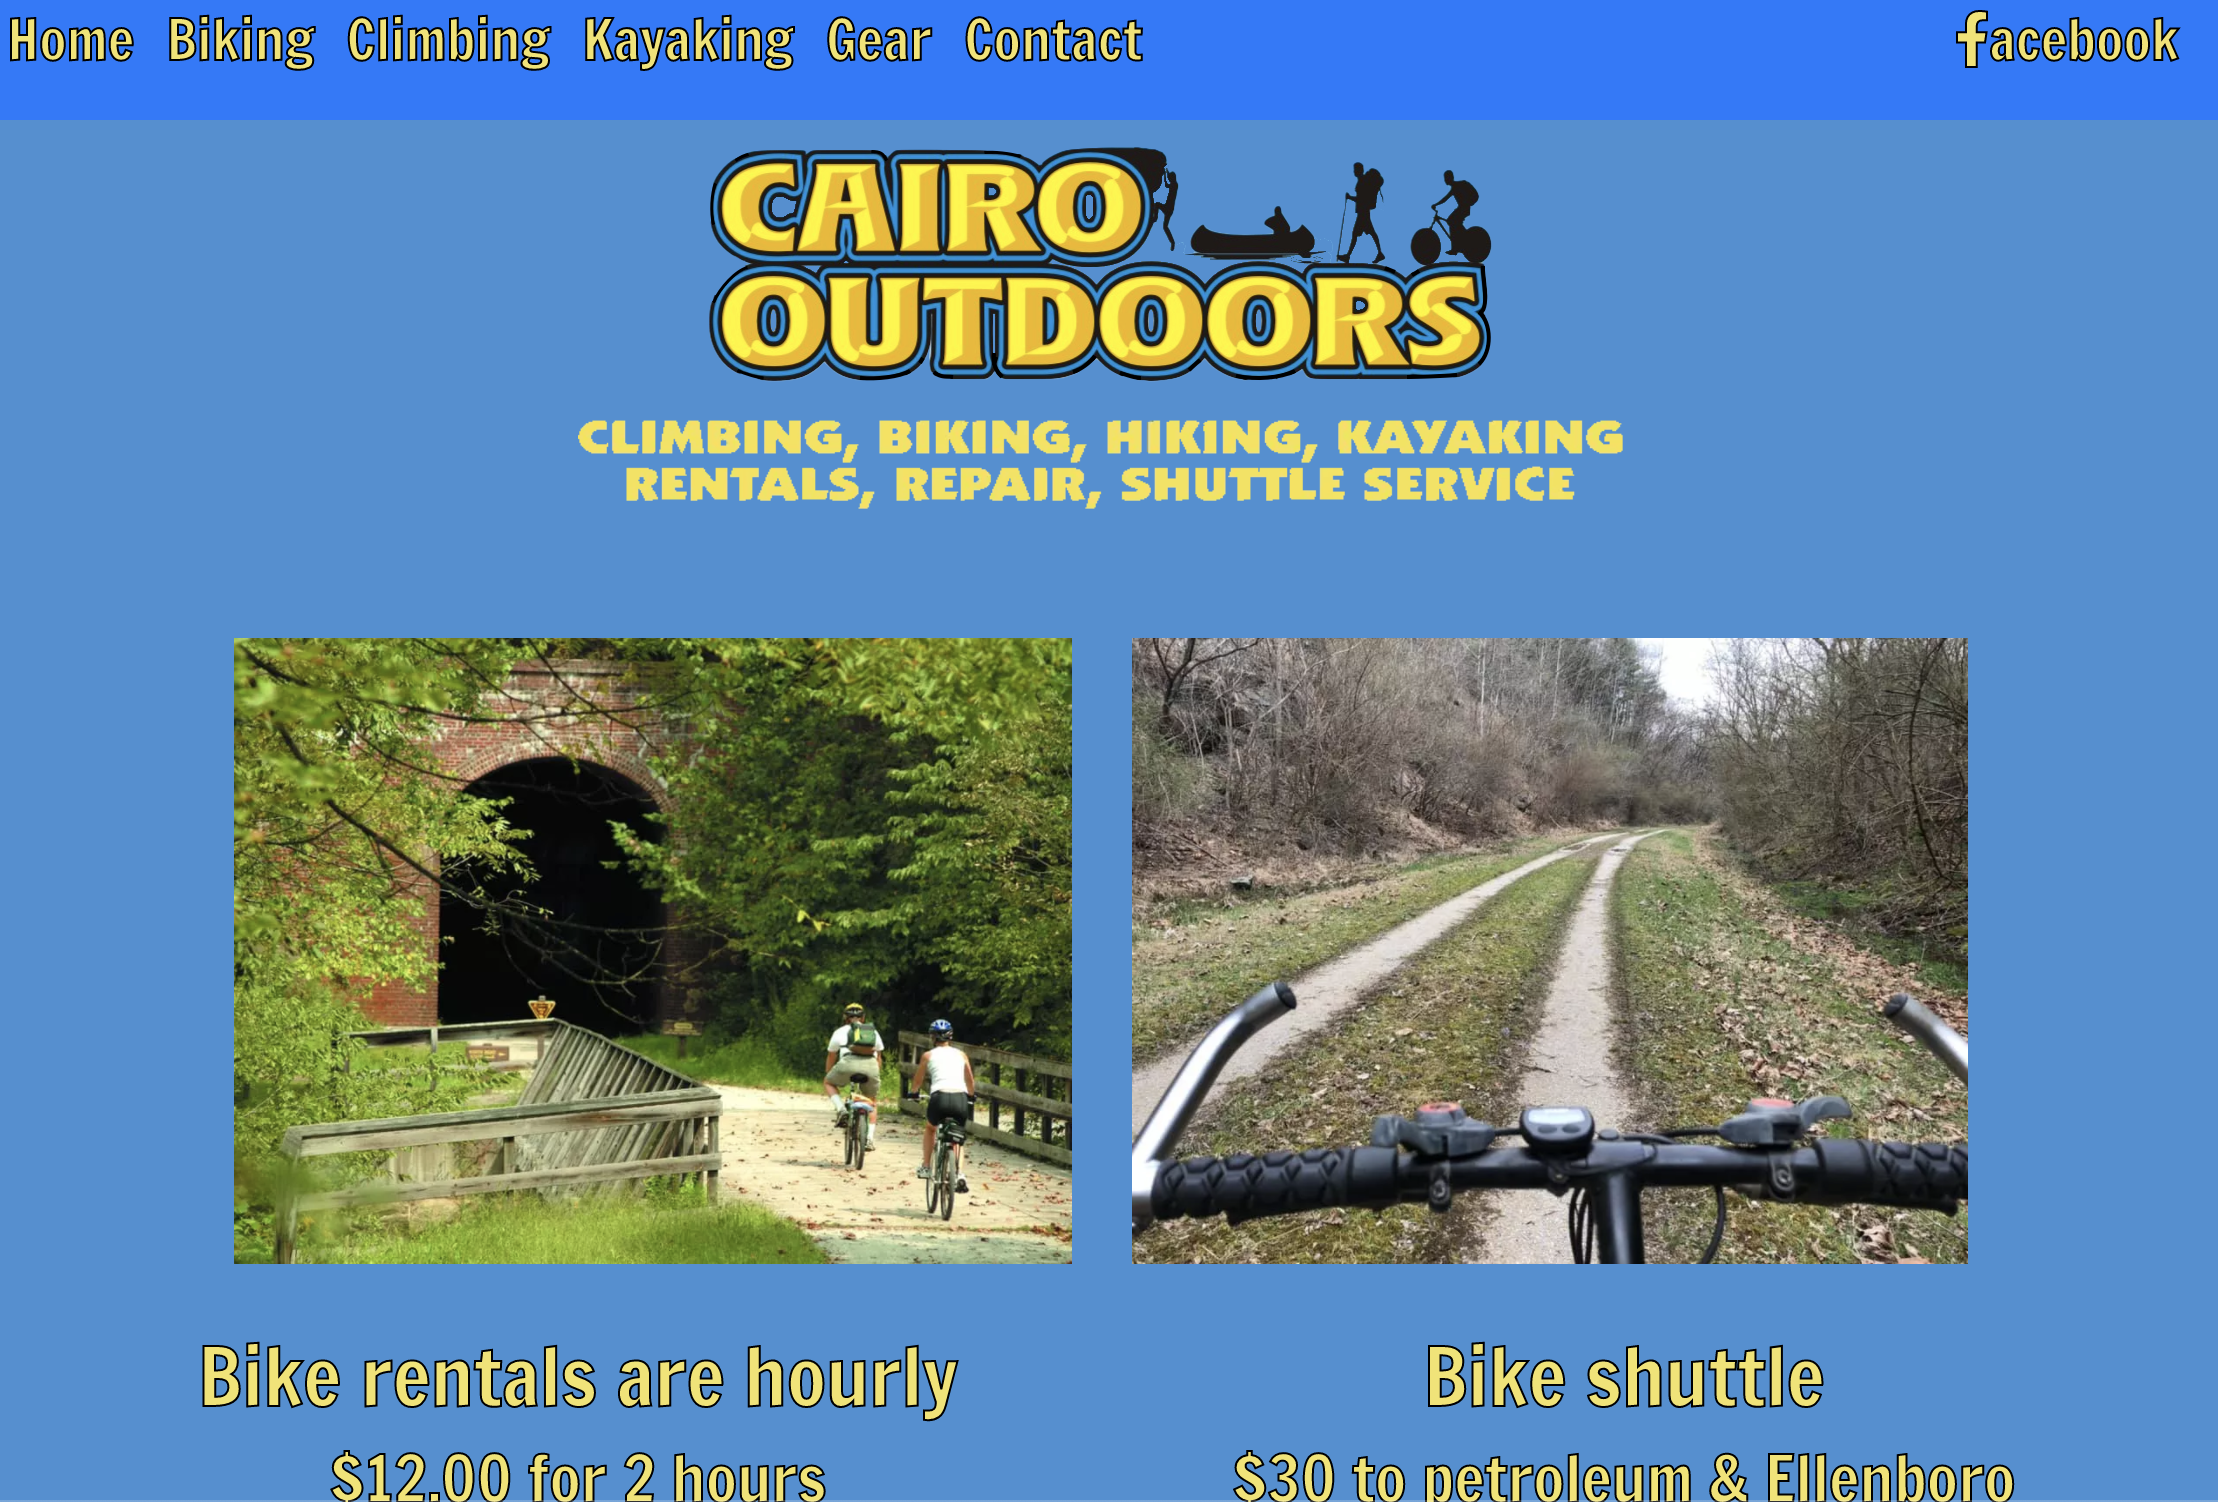 /static/cairo_outdoors/biking.png